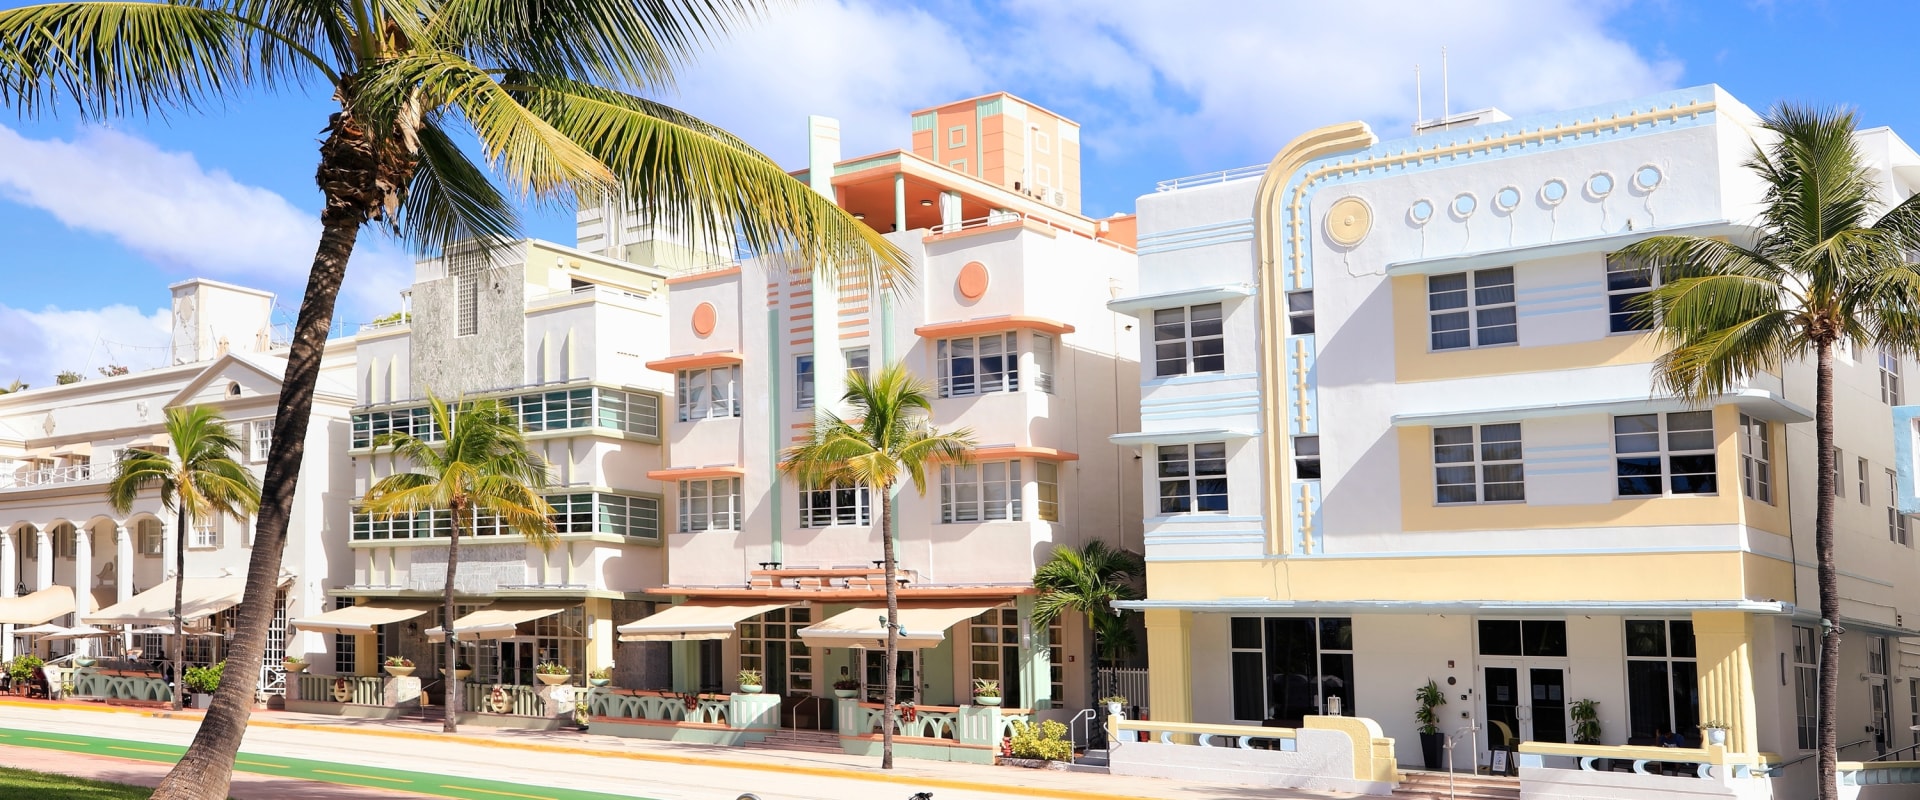 The Impact of Art Deco Architecture in Miami Beach